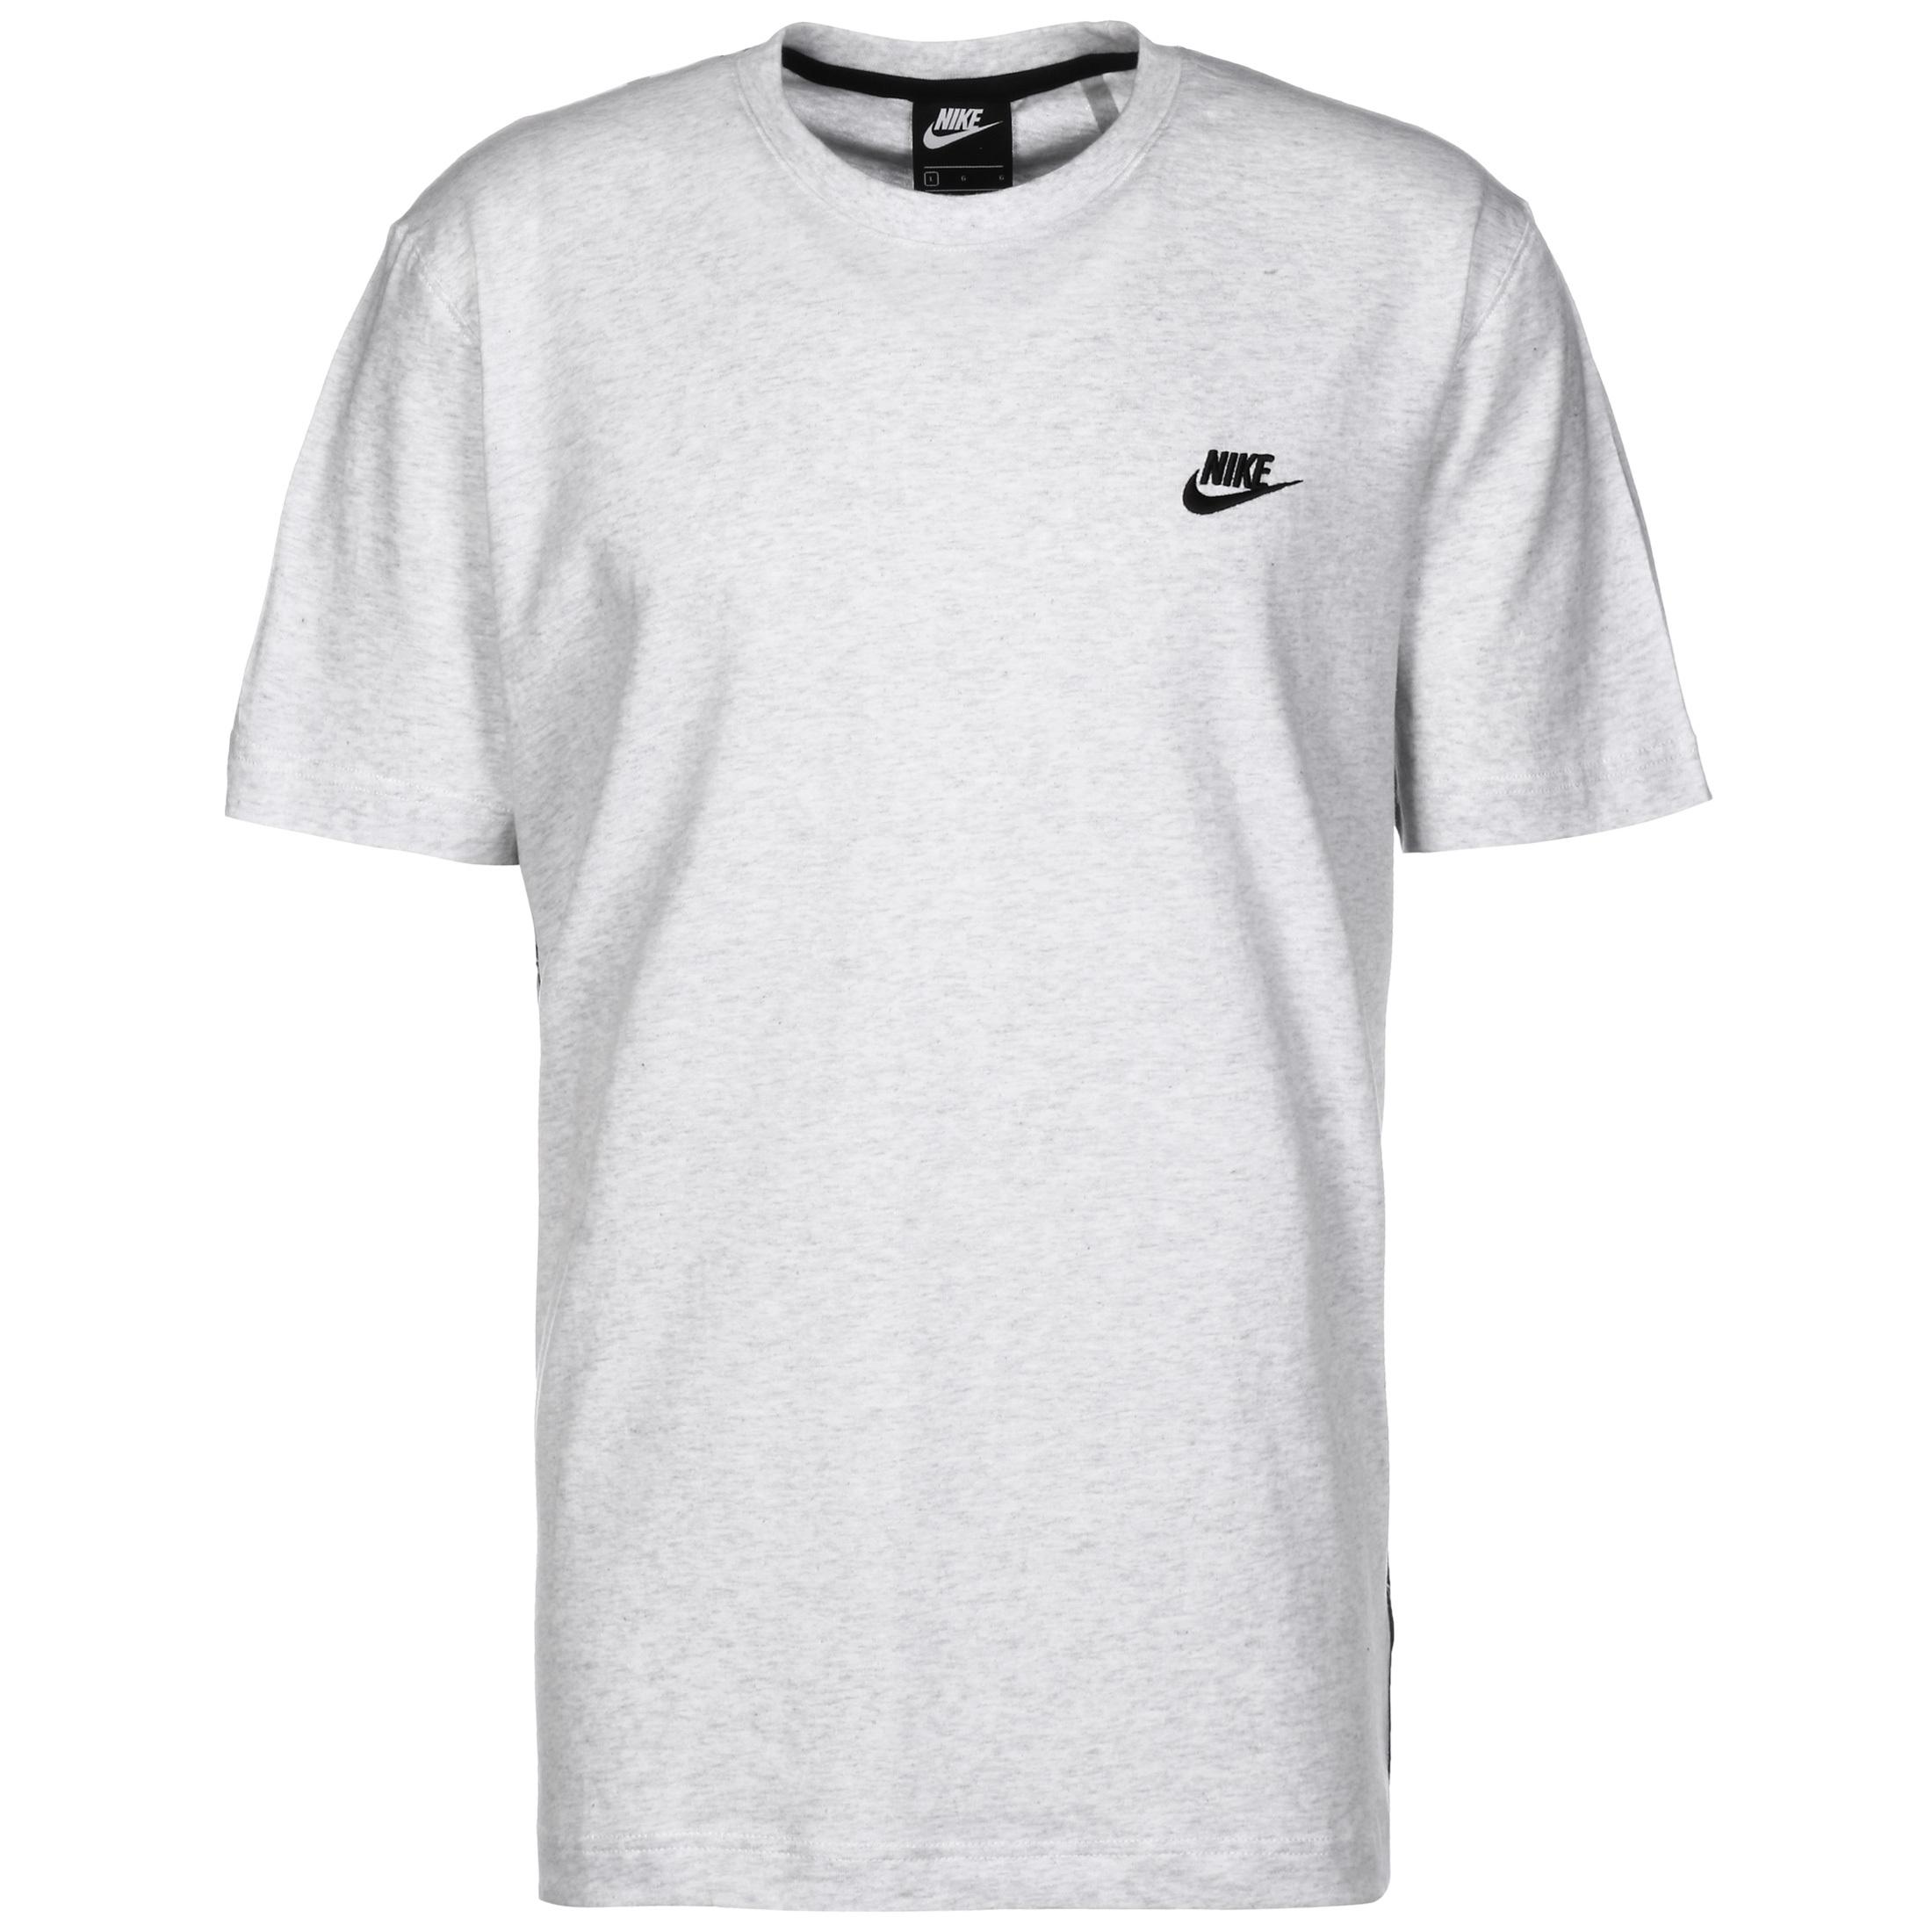 Nike City Edition T-Shirt Herren weiß / schwarz Shop SportScheck